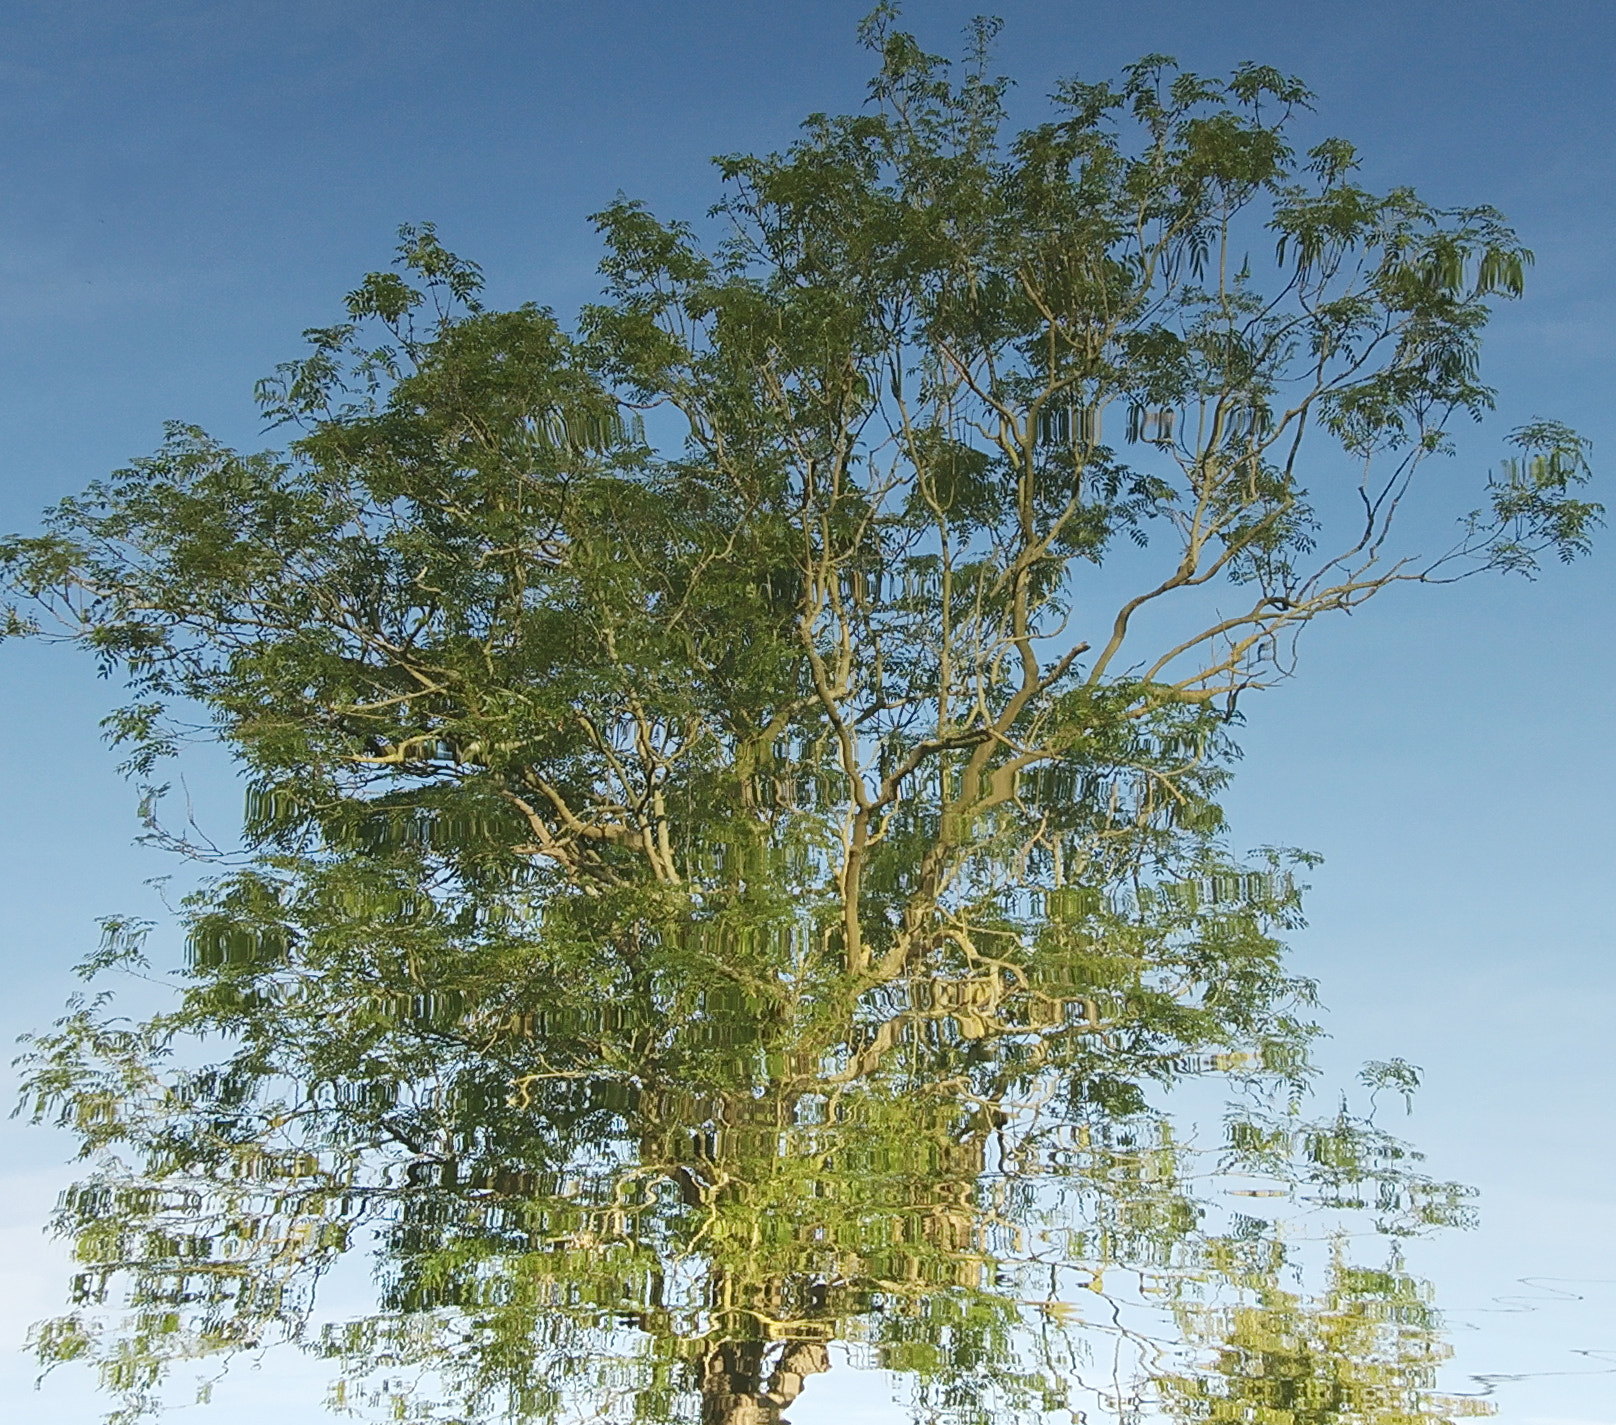 AF-S DX Zoom-Nikkor 18-55mm f/3.5-5.6G ED sample photo. Distorted tree photography